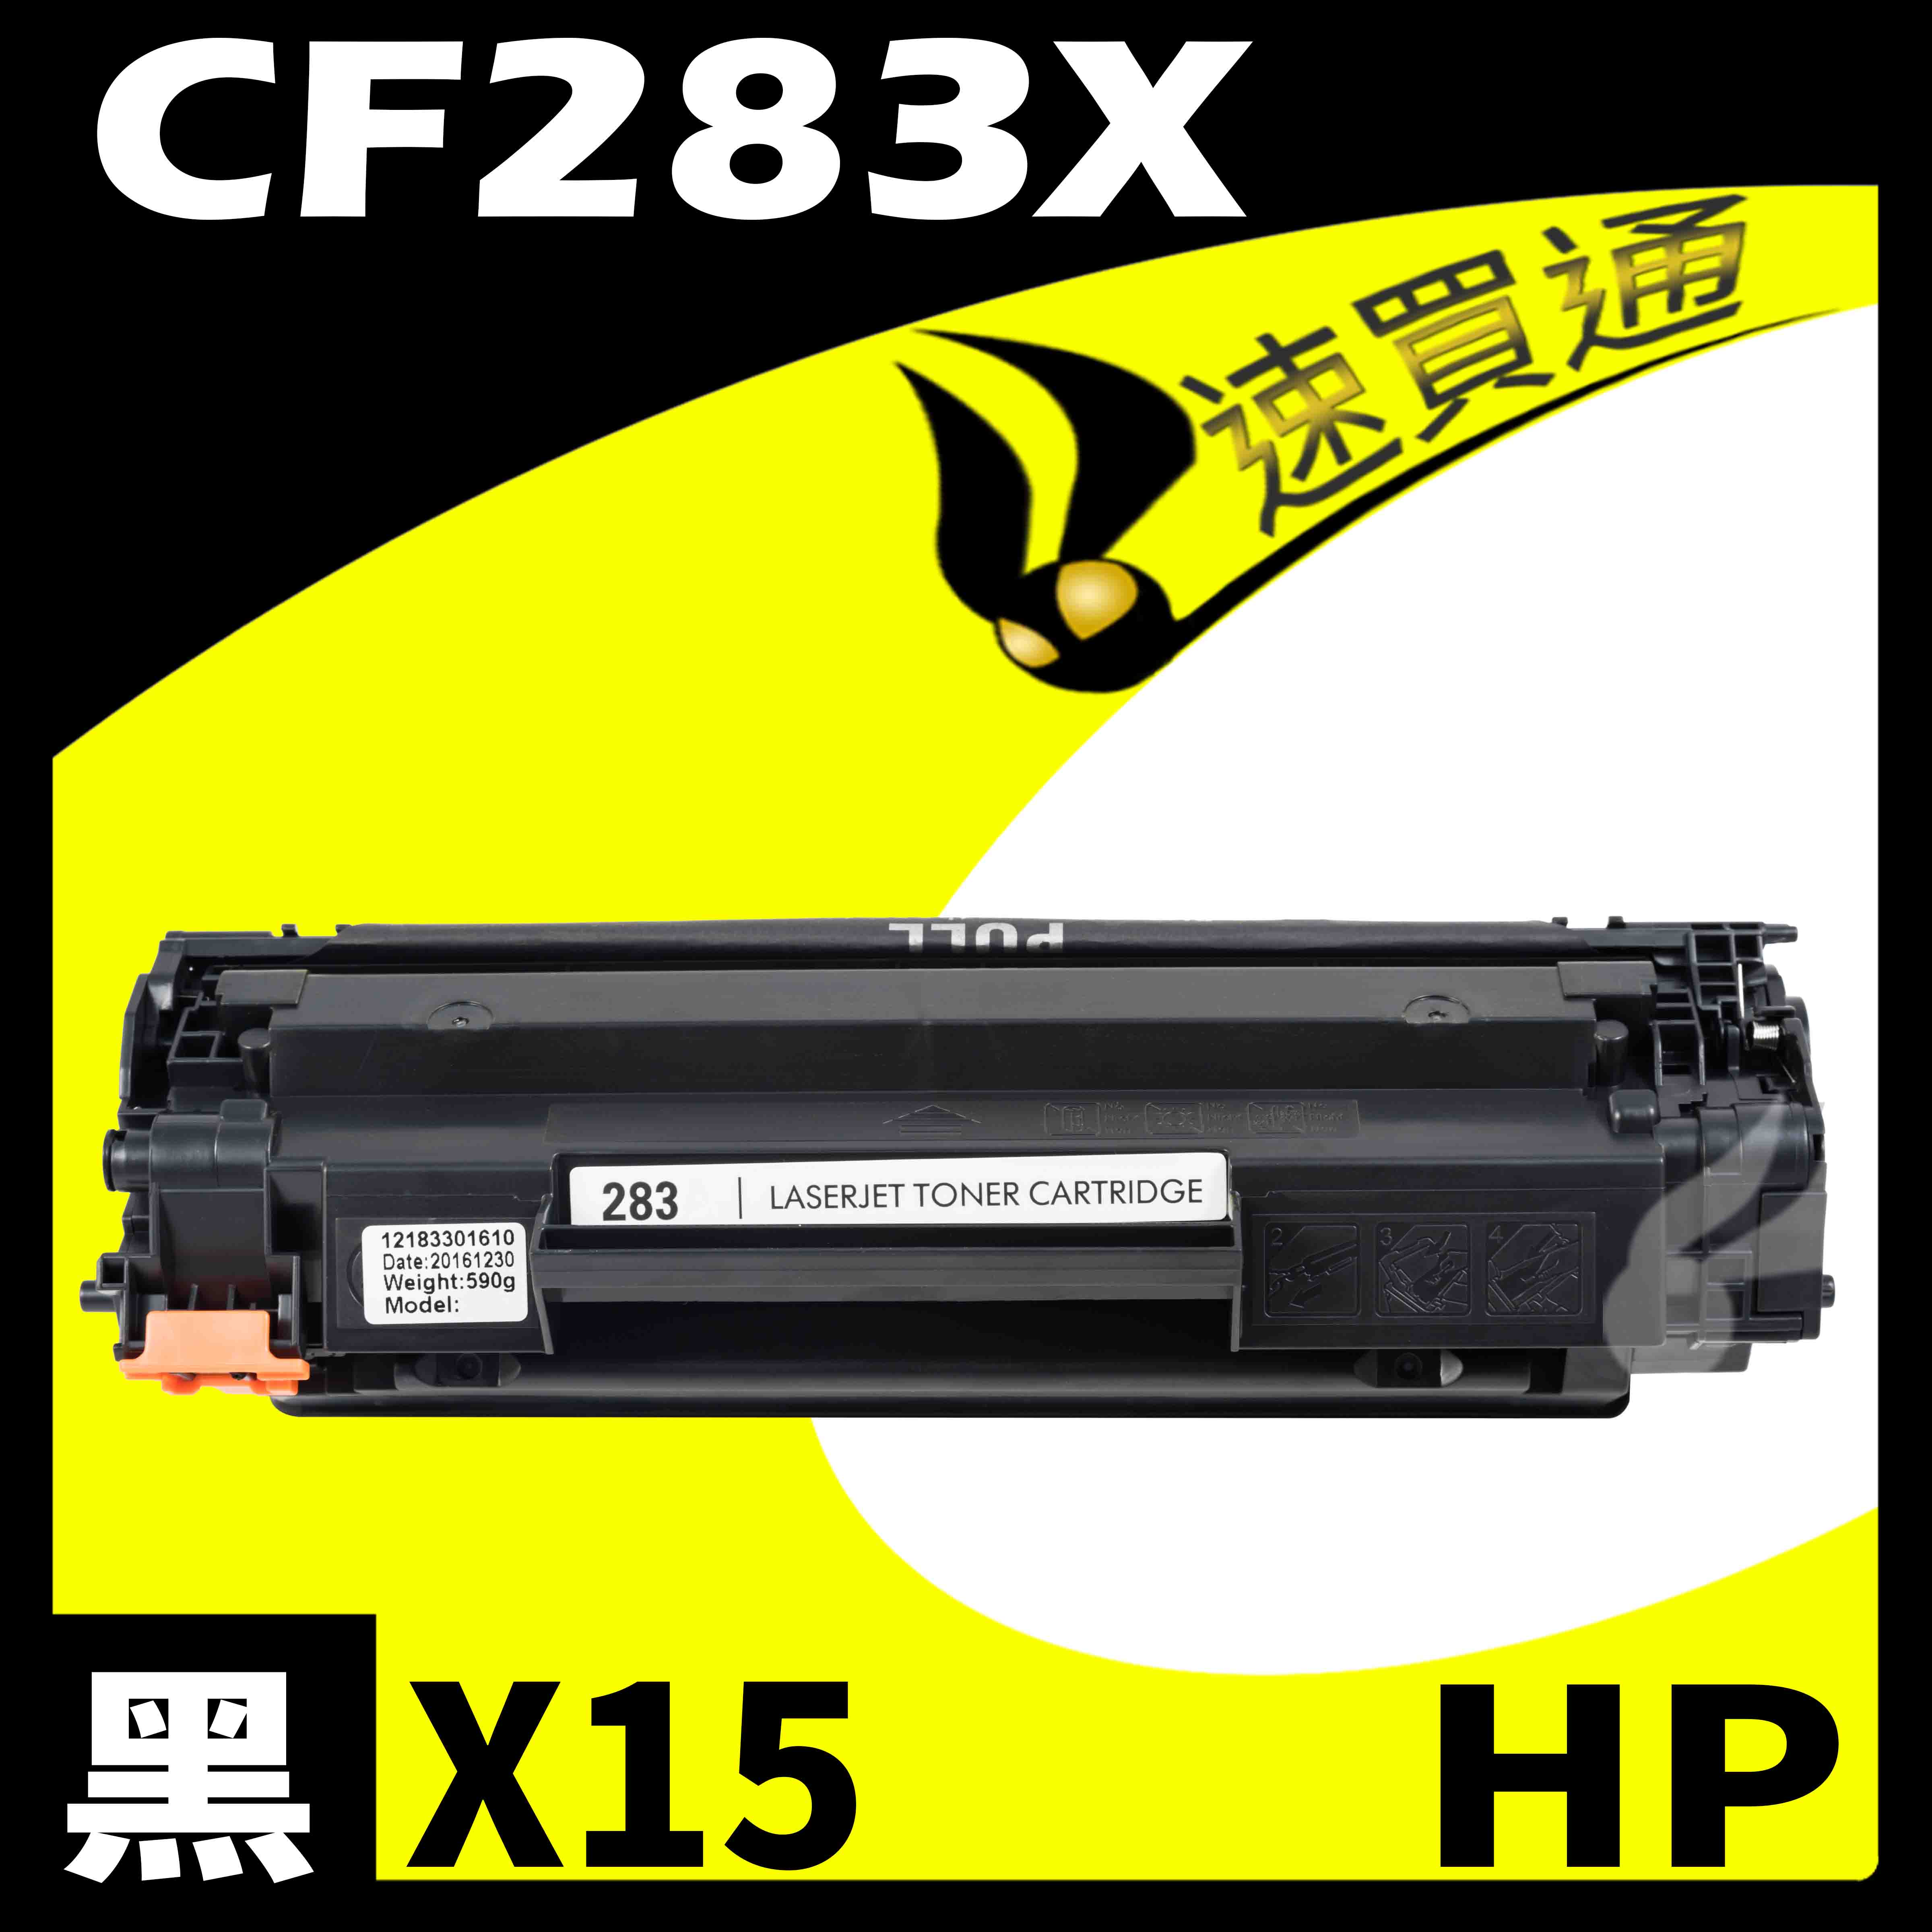 【速買通】超值15件組 HP CF283X 相容碳粉匣